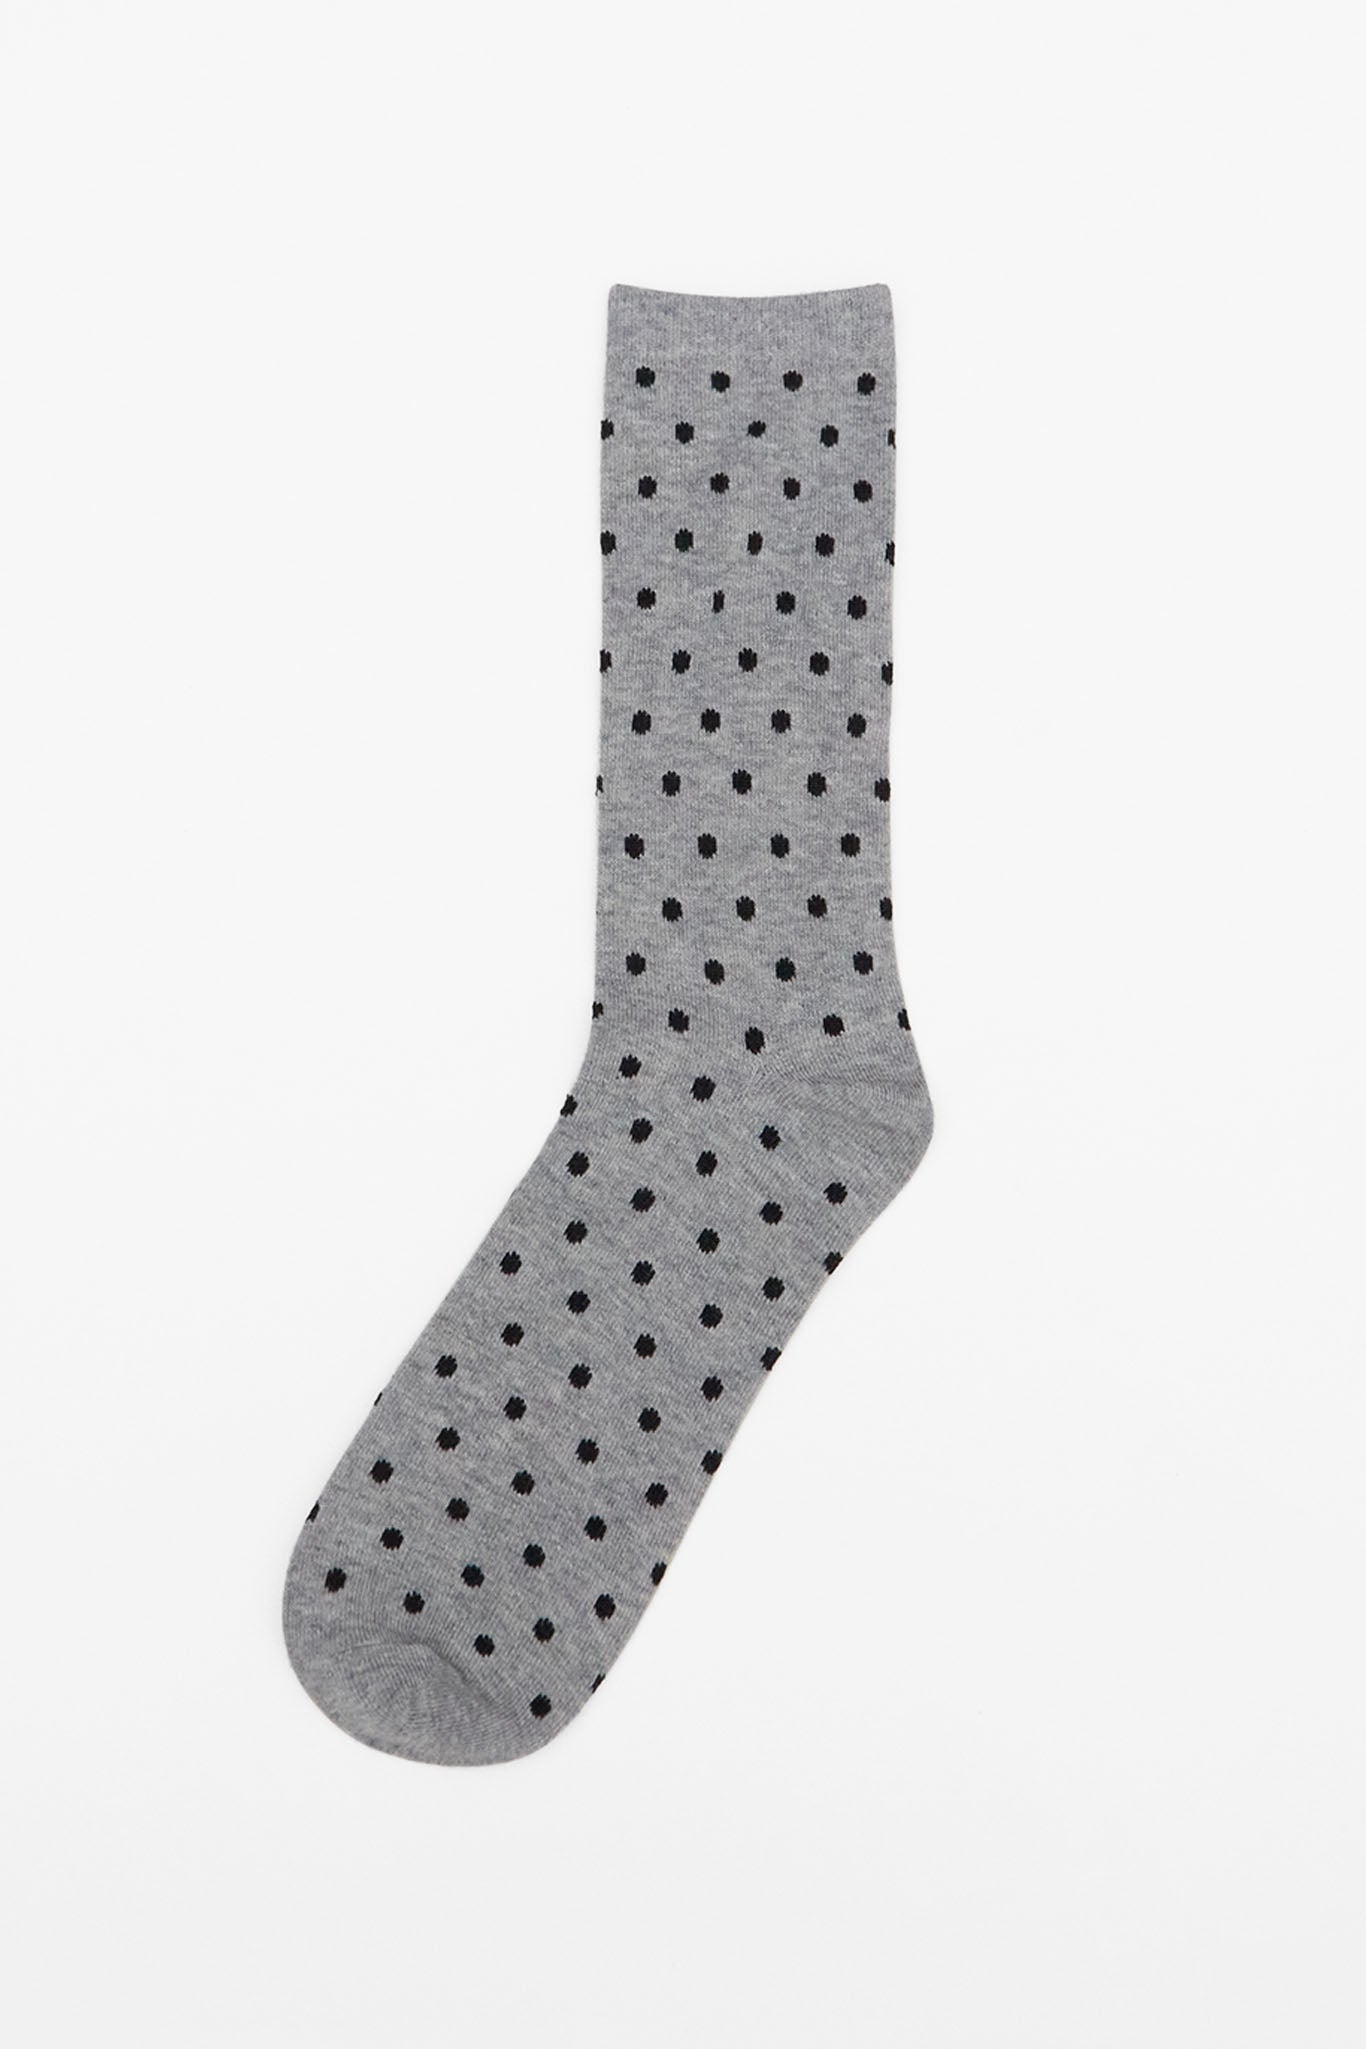 Grey Polka Dot Groomsmen Socks